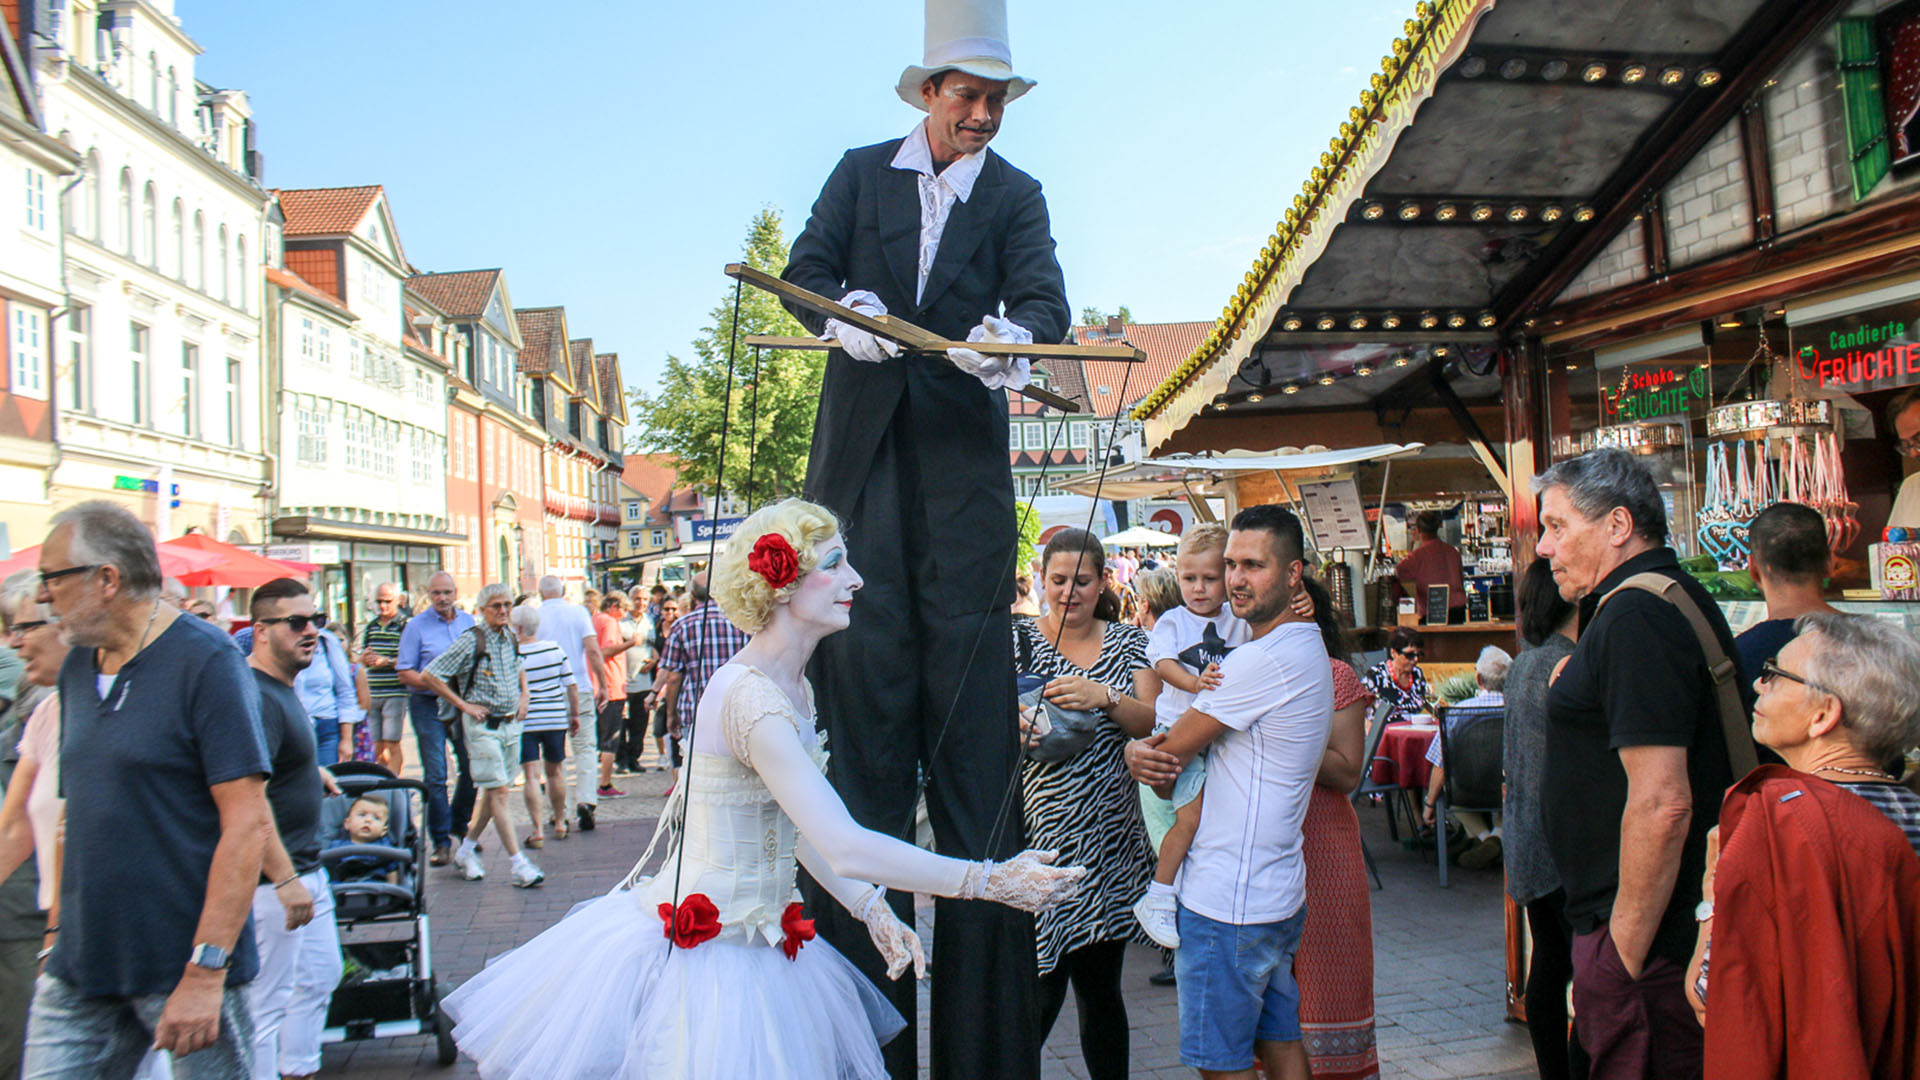 Ein Stelzenläufer wandert durch das Publikum in der Fußgängerzone und scheint eine Marionette zu bedienen, die in Realität eine Frau in Ballerina-Kostüm ist.